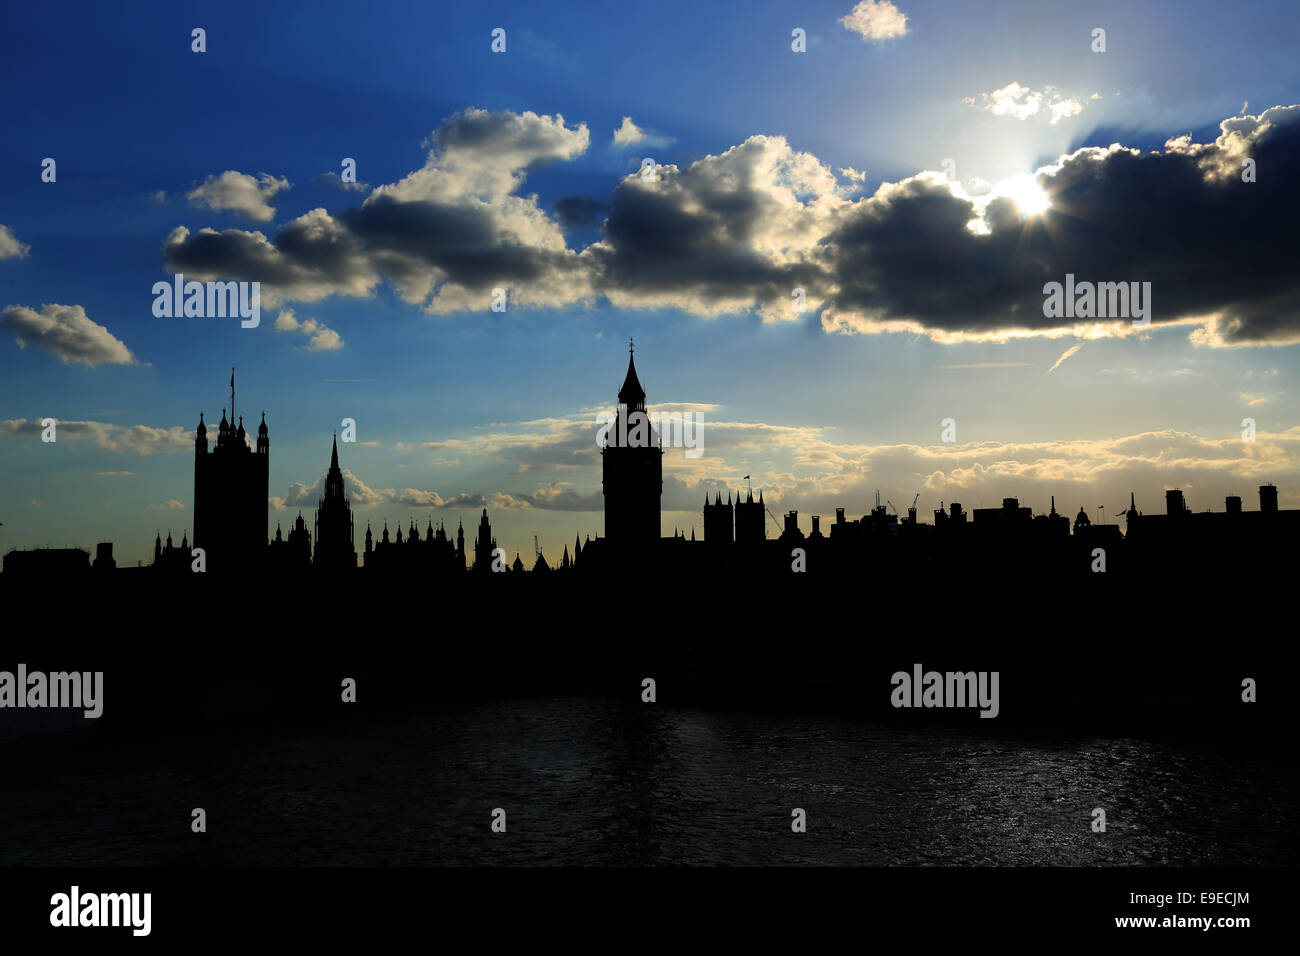 peter pan london skyline silhouette